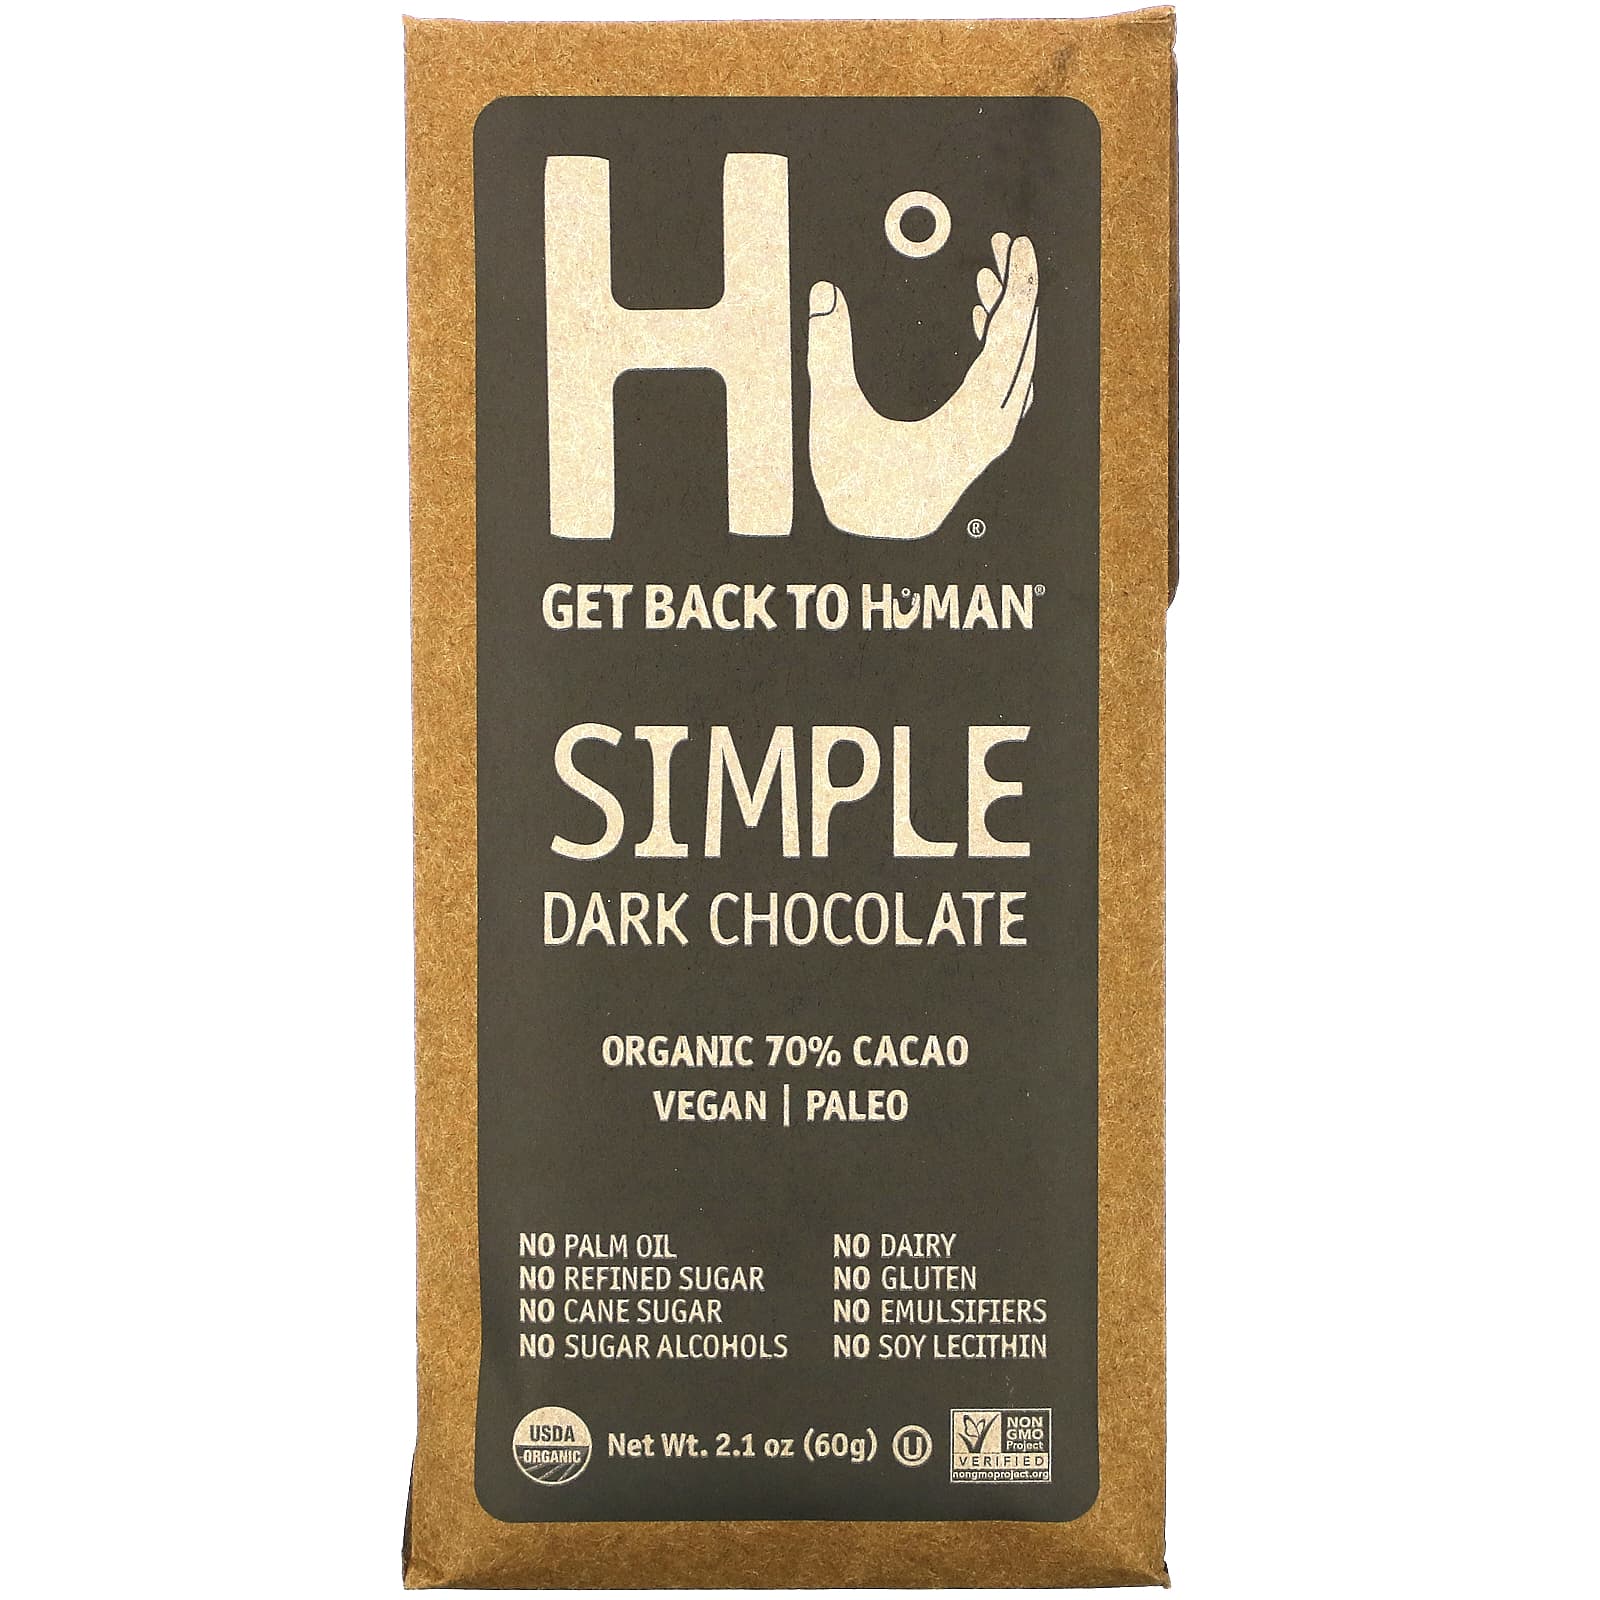 Hu, Simple, Dark Chocolate, 2.1 oz (60 g)